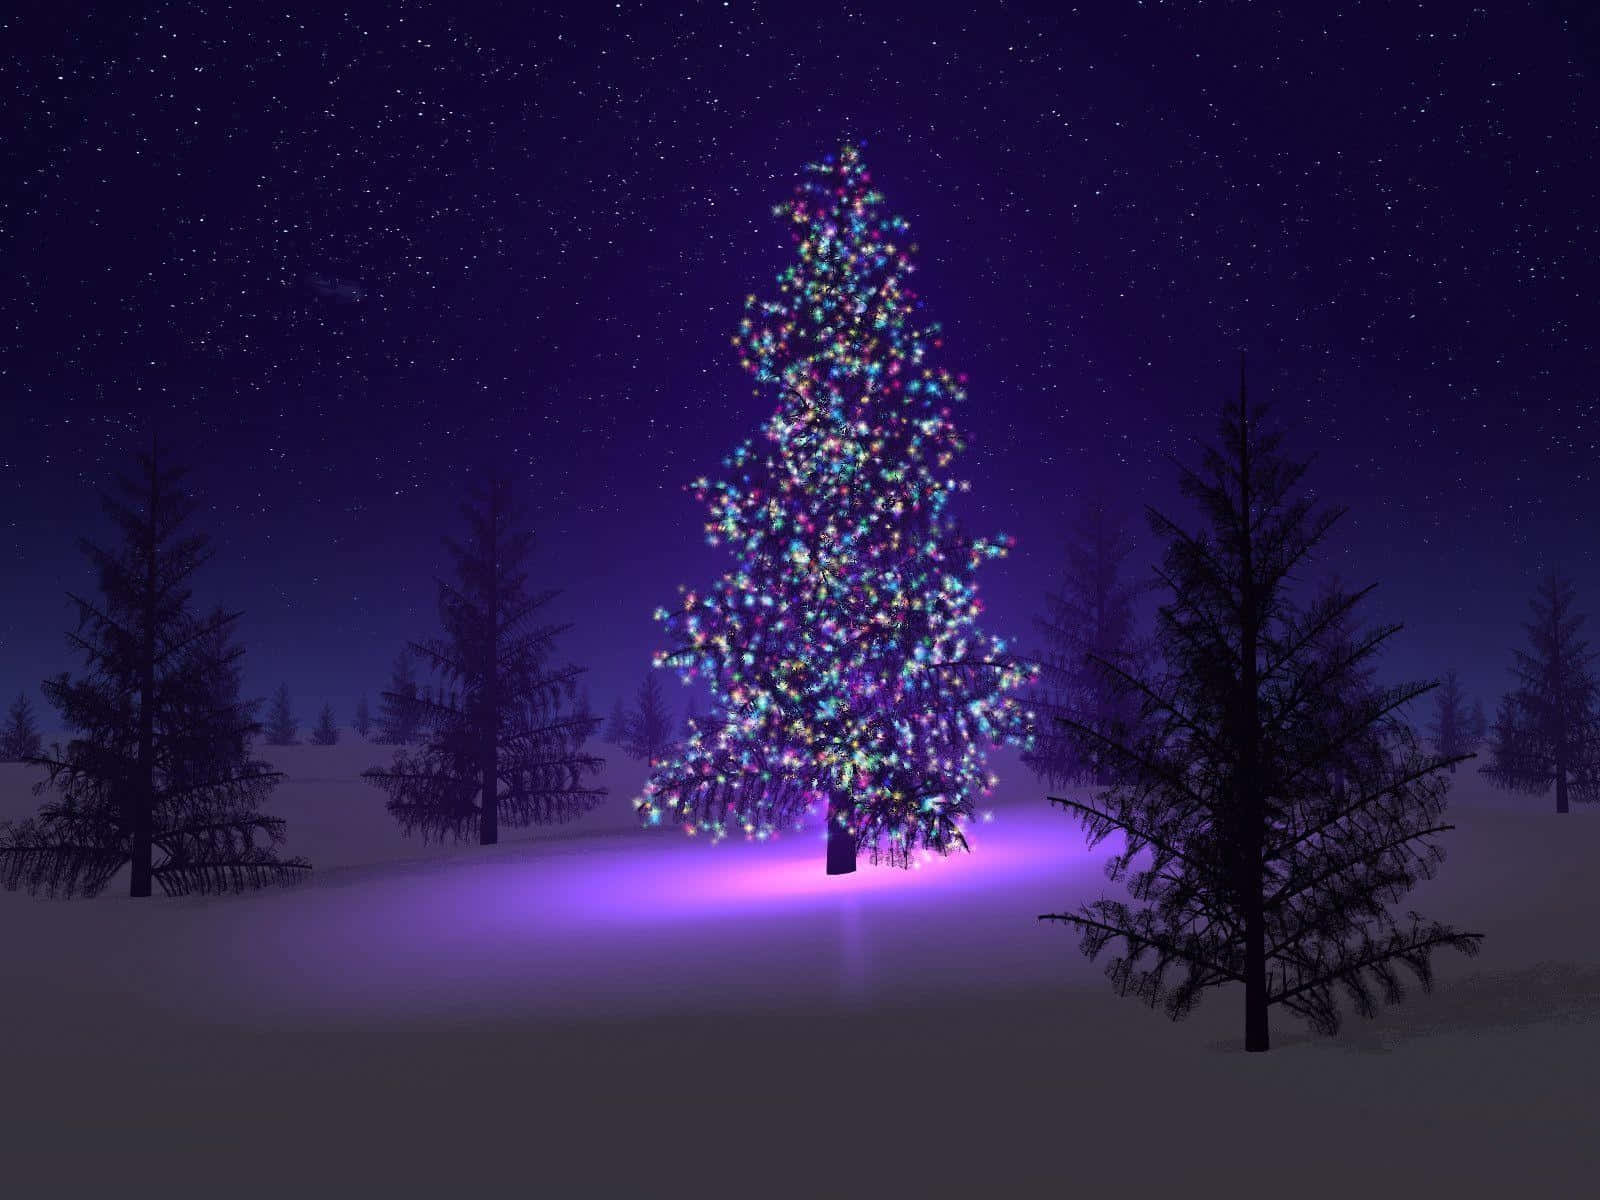 Papelde Parede De Inverno Para O Desktop Com Árvore De Natal Iluminada Com Luzes Coloridas. Papel de Parede